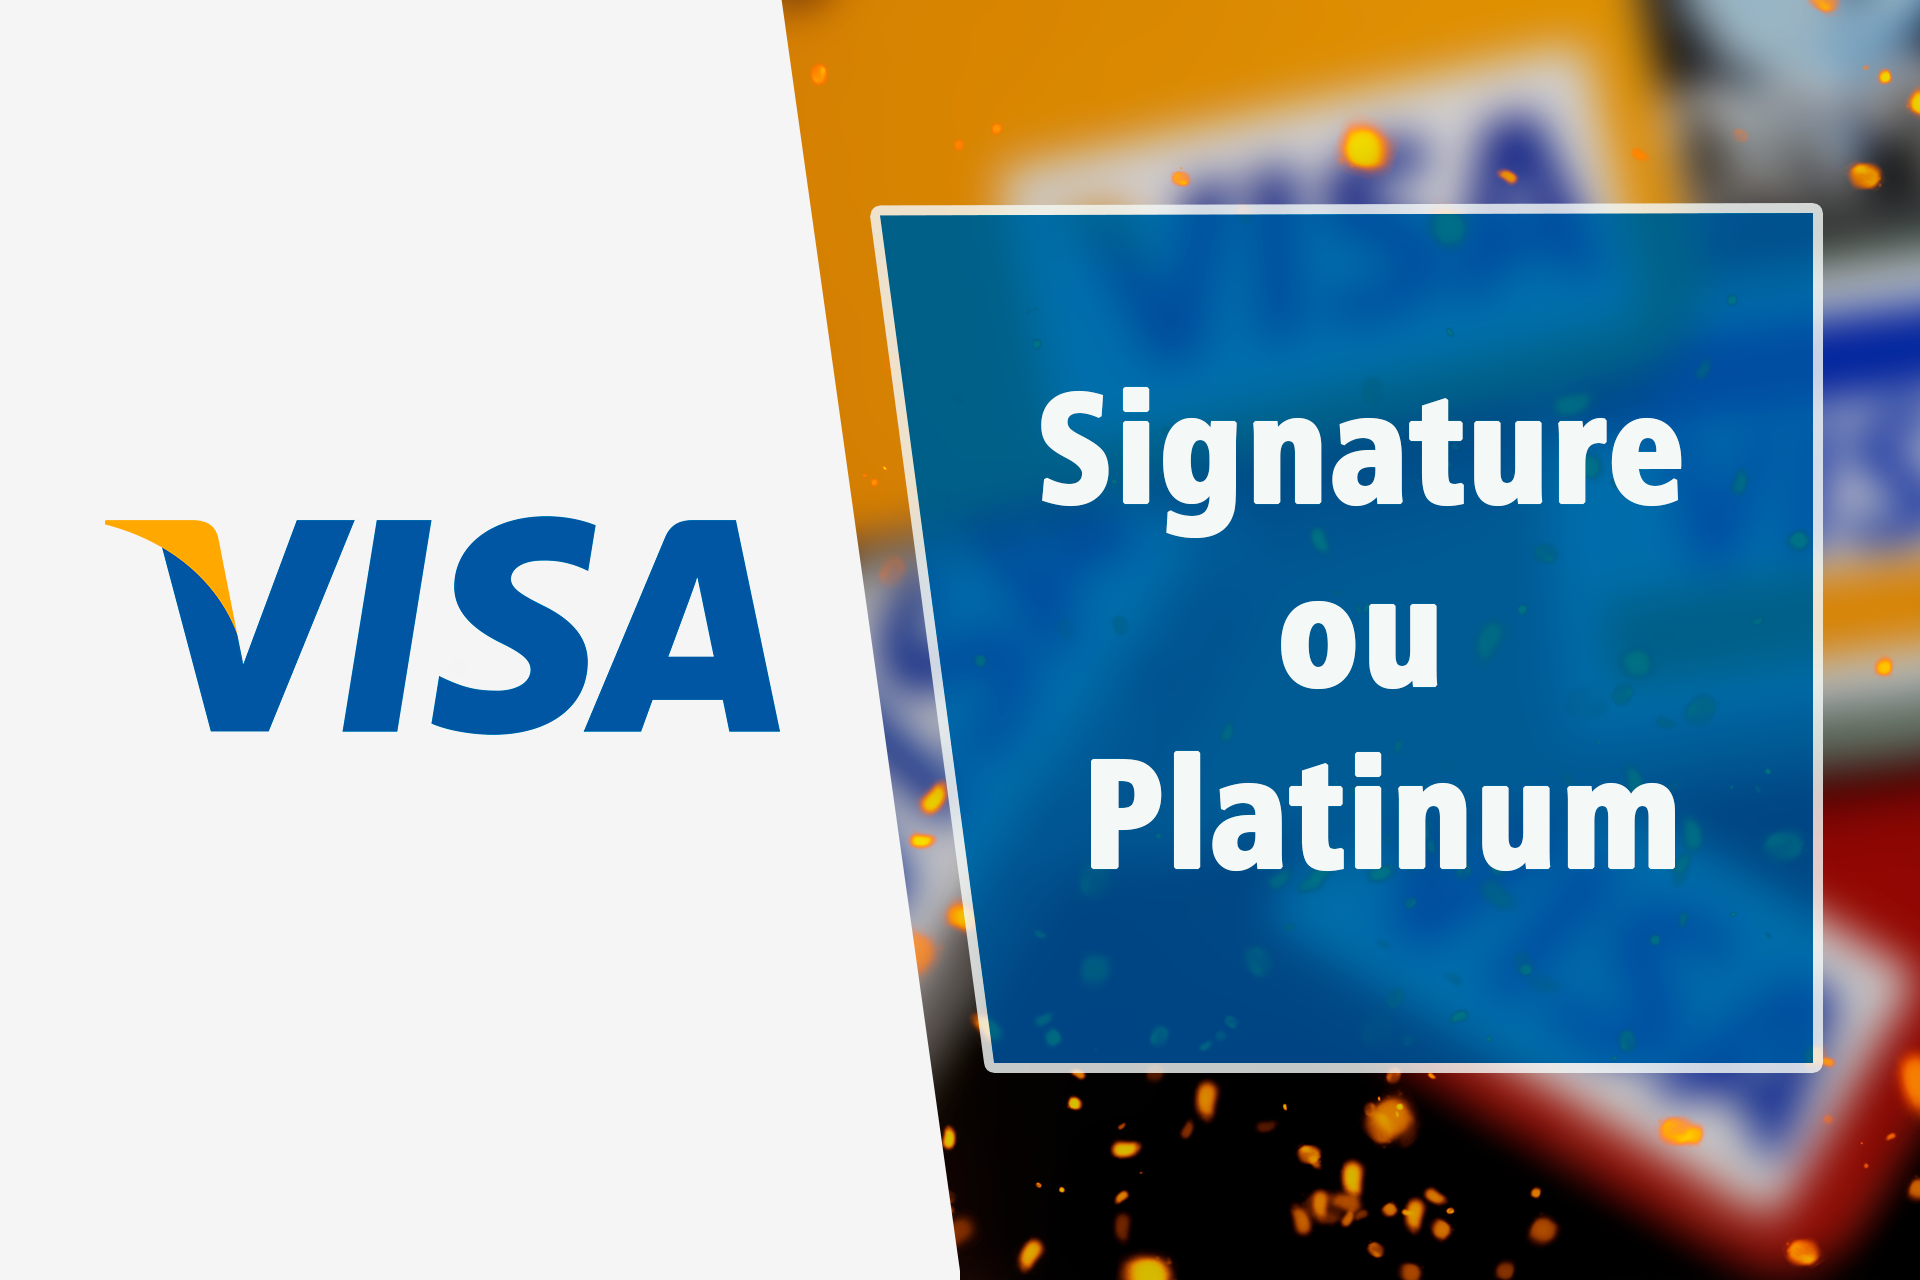 Visa Signature ou Platinum: Qual é o Melhor Cartão de Crédito?